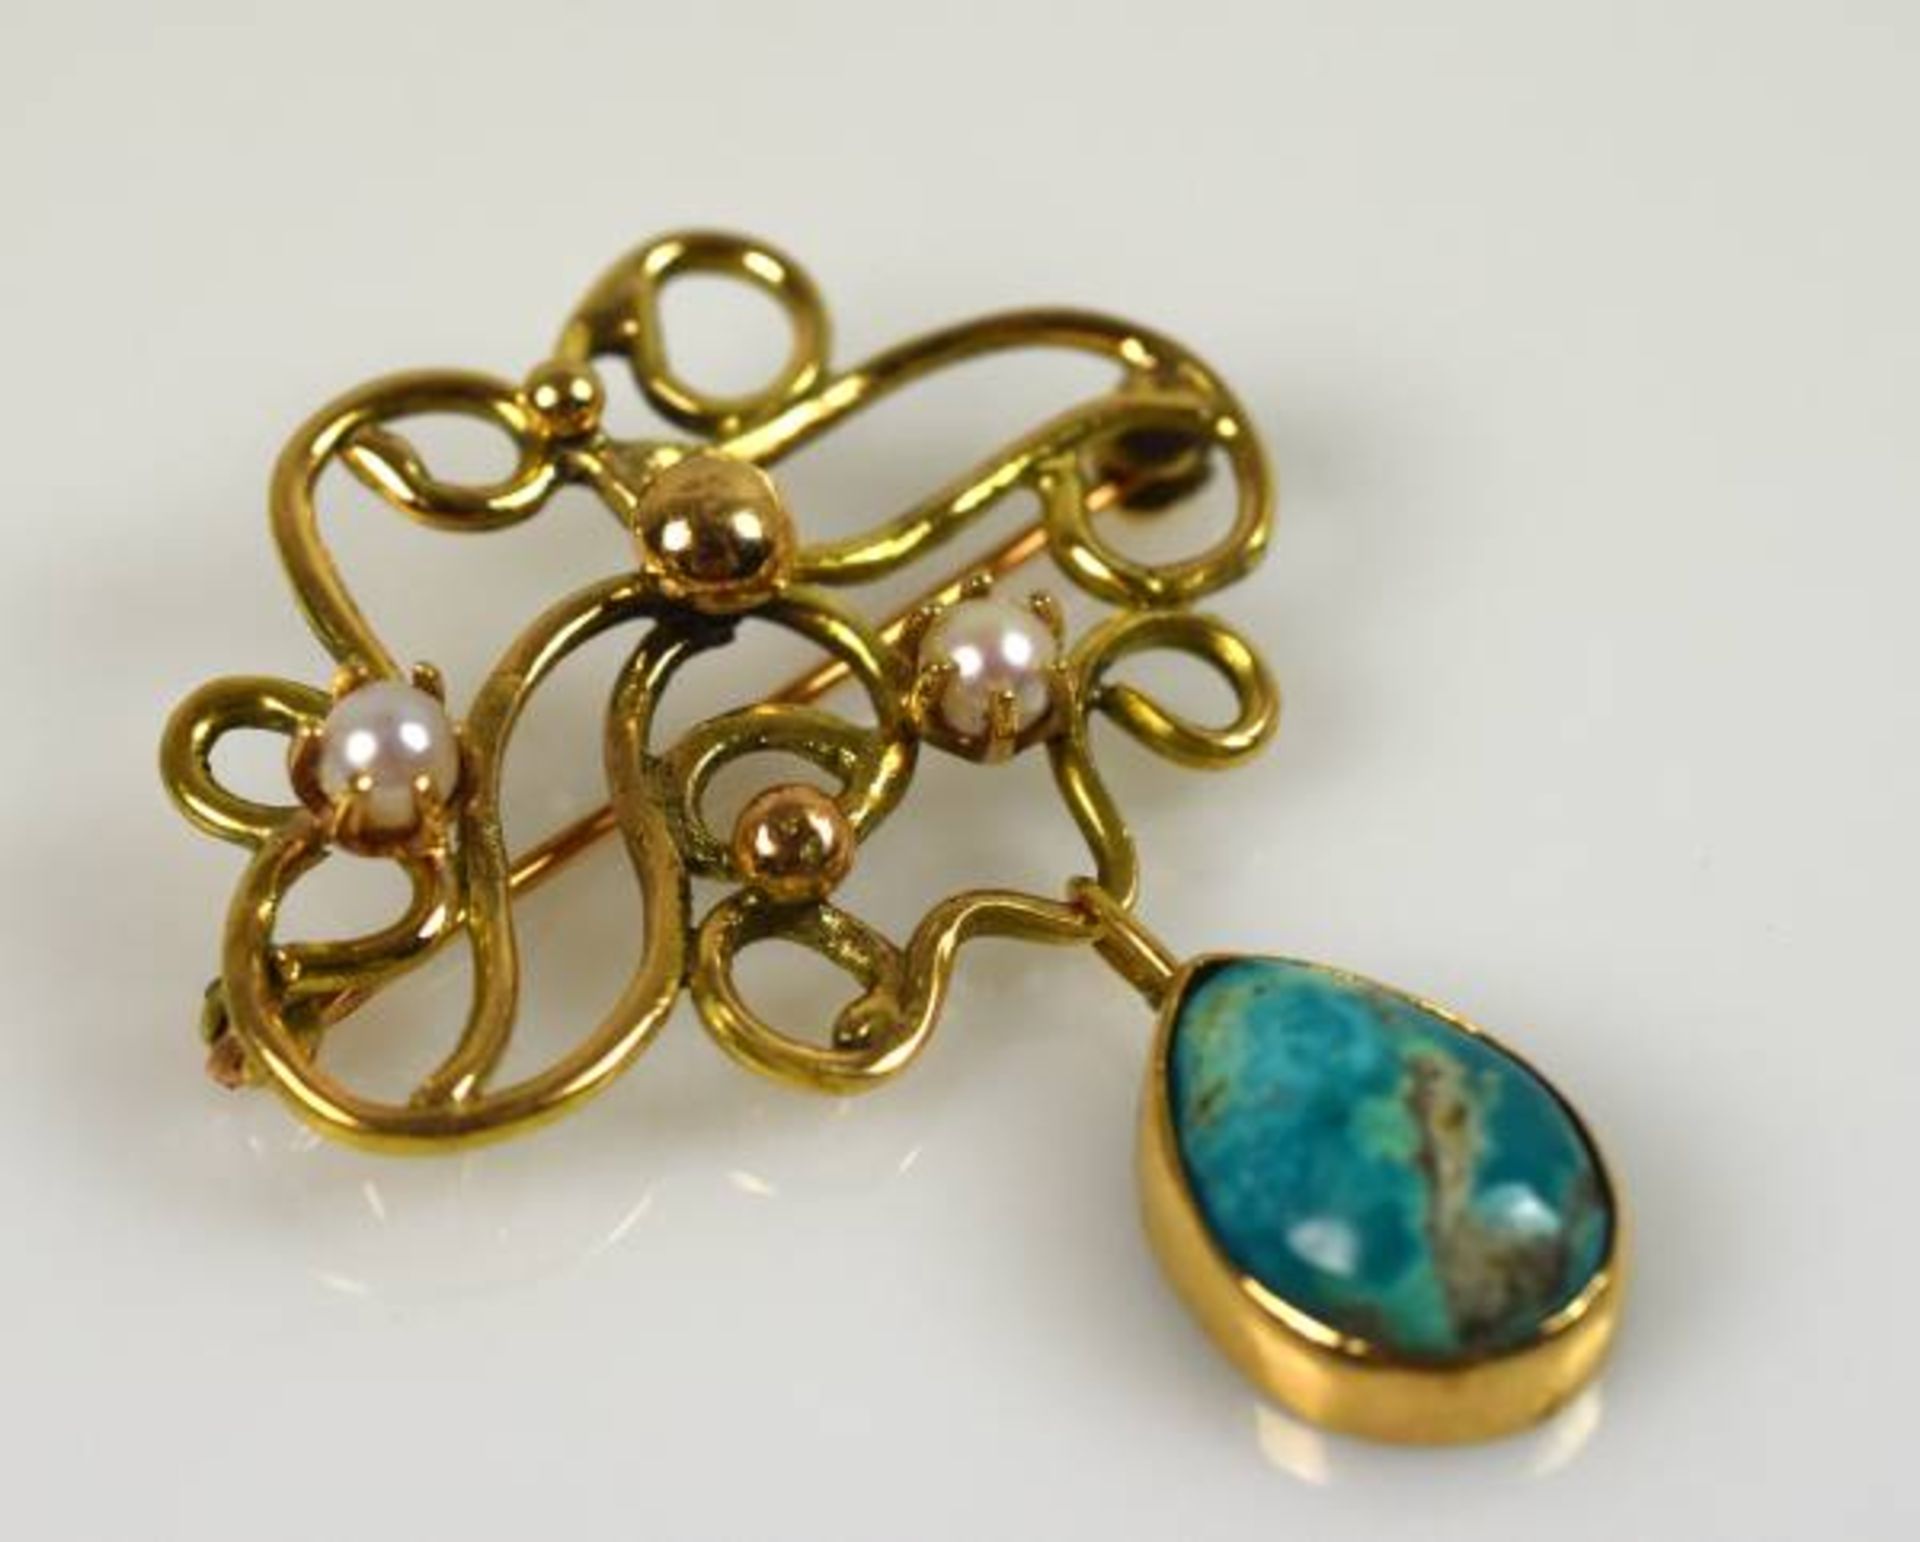 BROSCHE modernes Design aus geschwungenem Golddraht, besetzt mit Goldkügelchen und weissen Perlen,